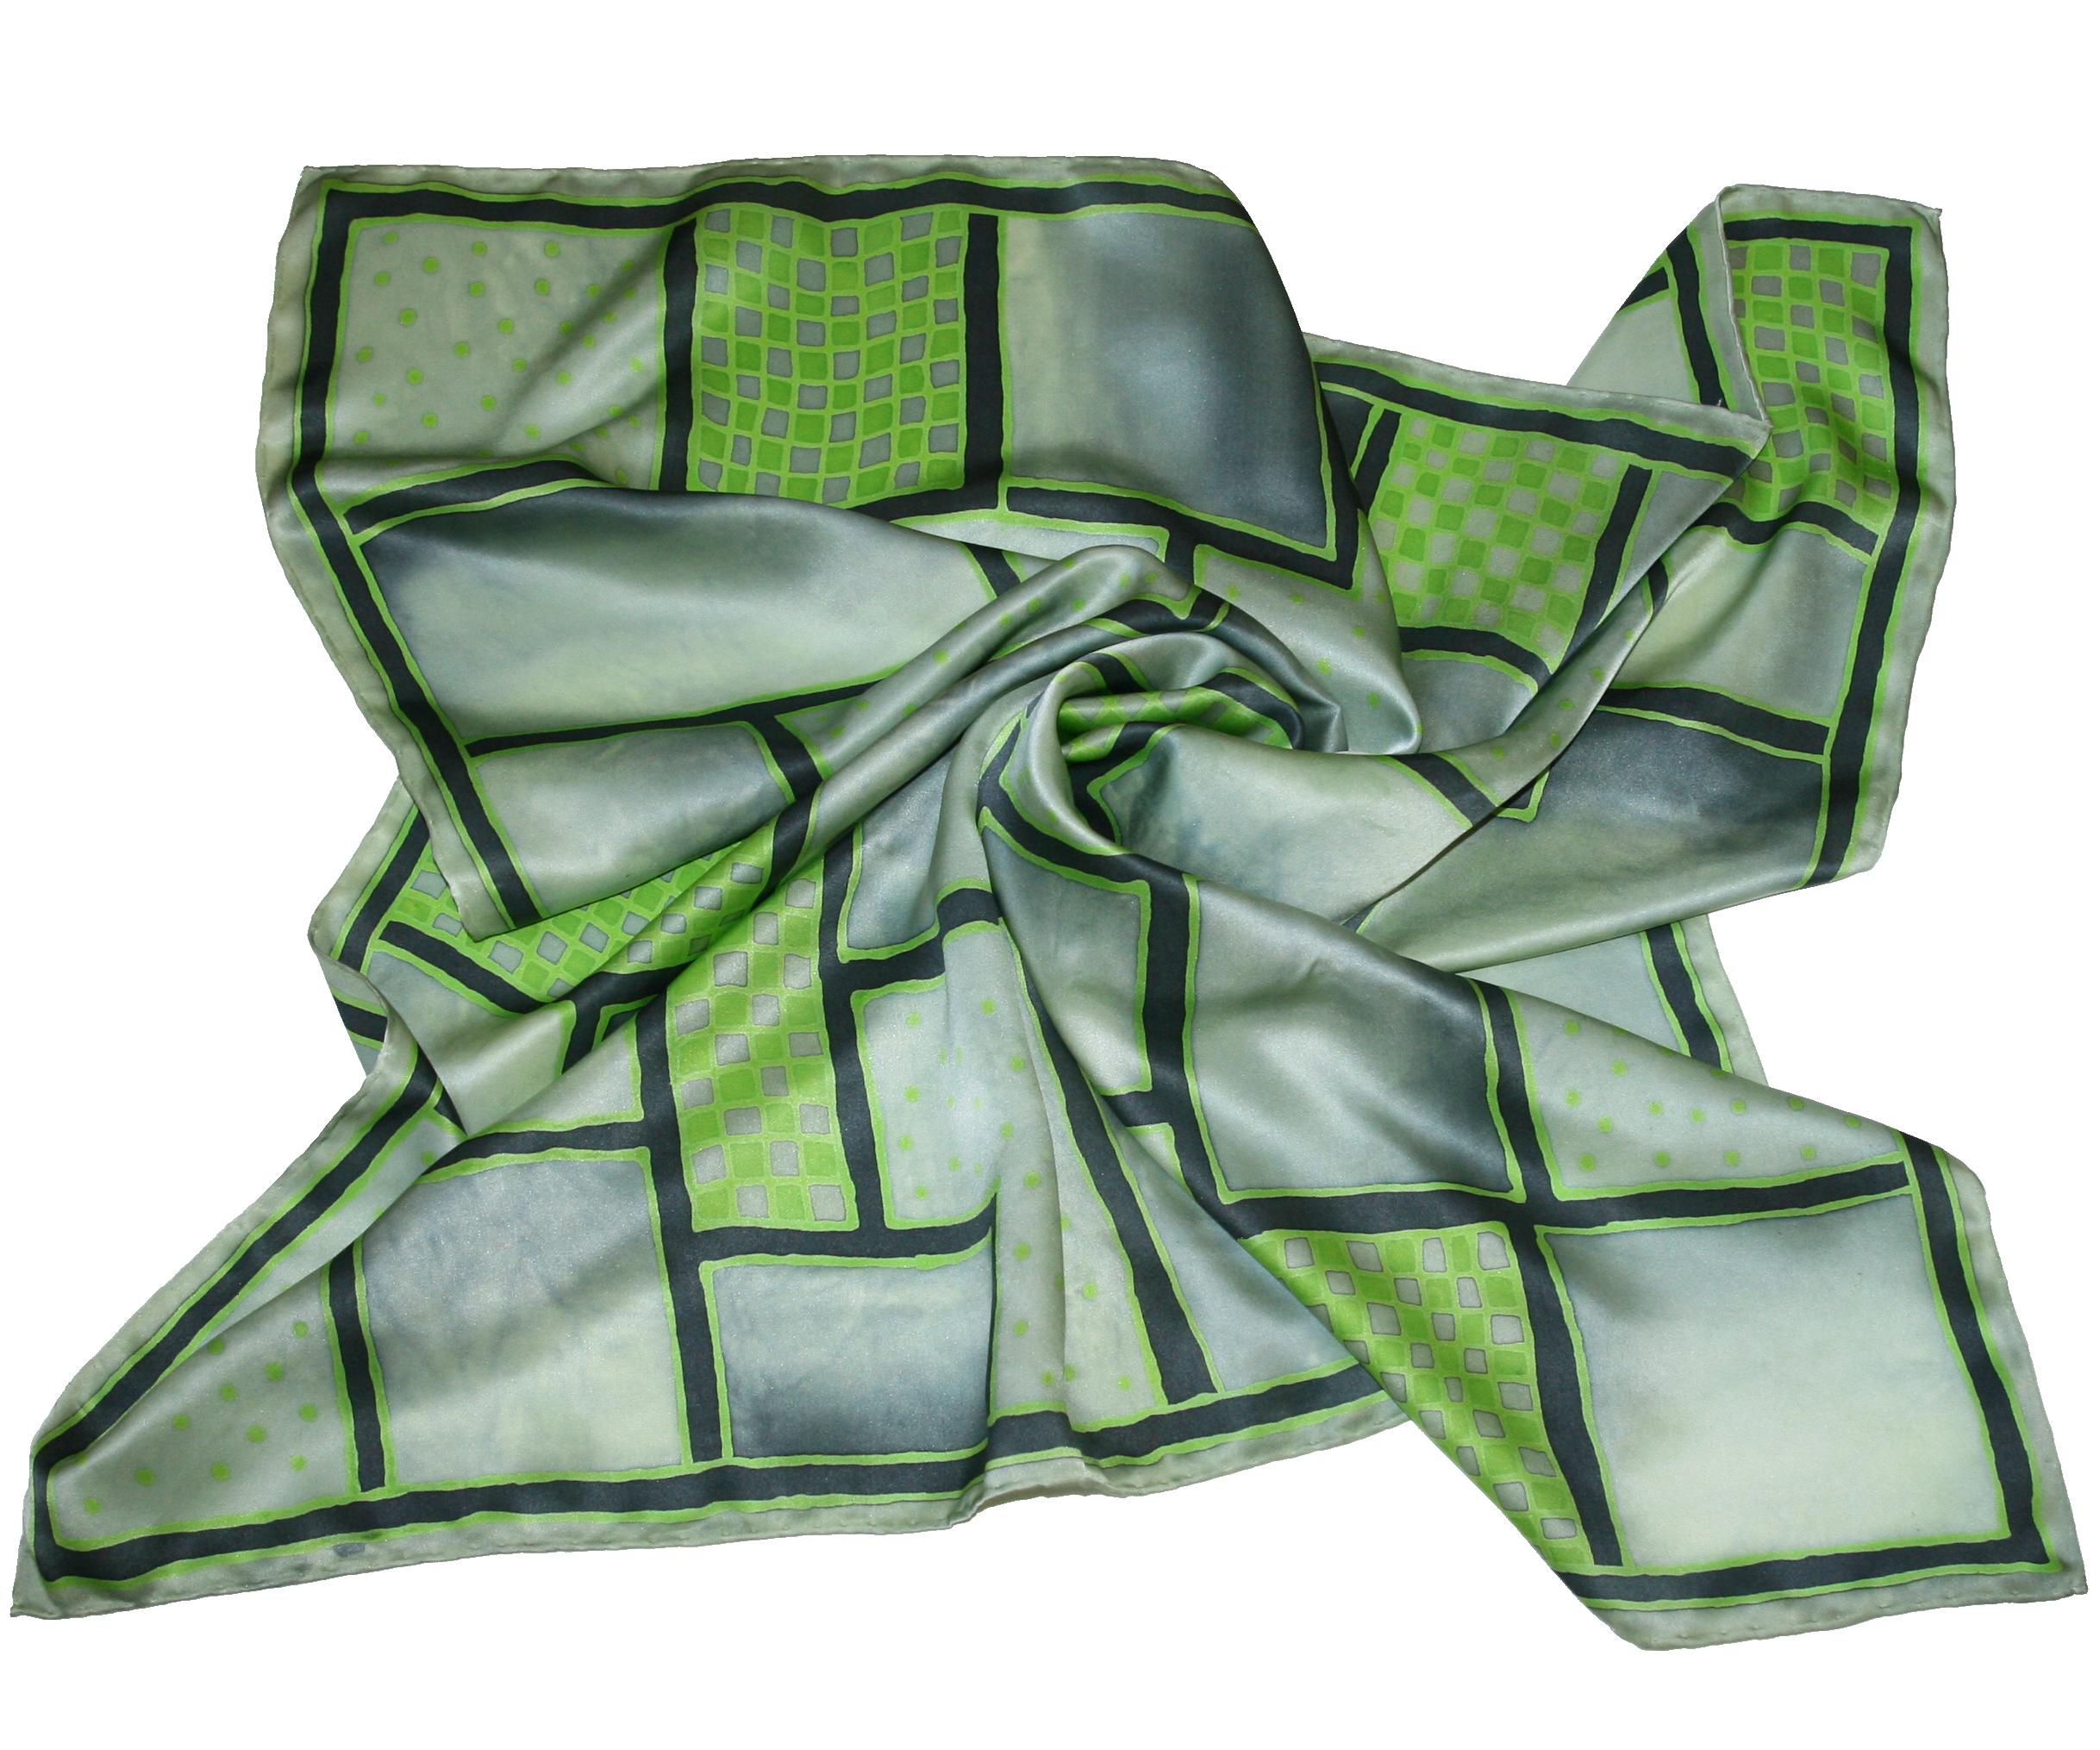 Čtvercování šedozelené - hedvábný šátek ručně malovaný